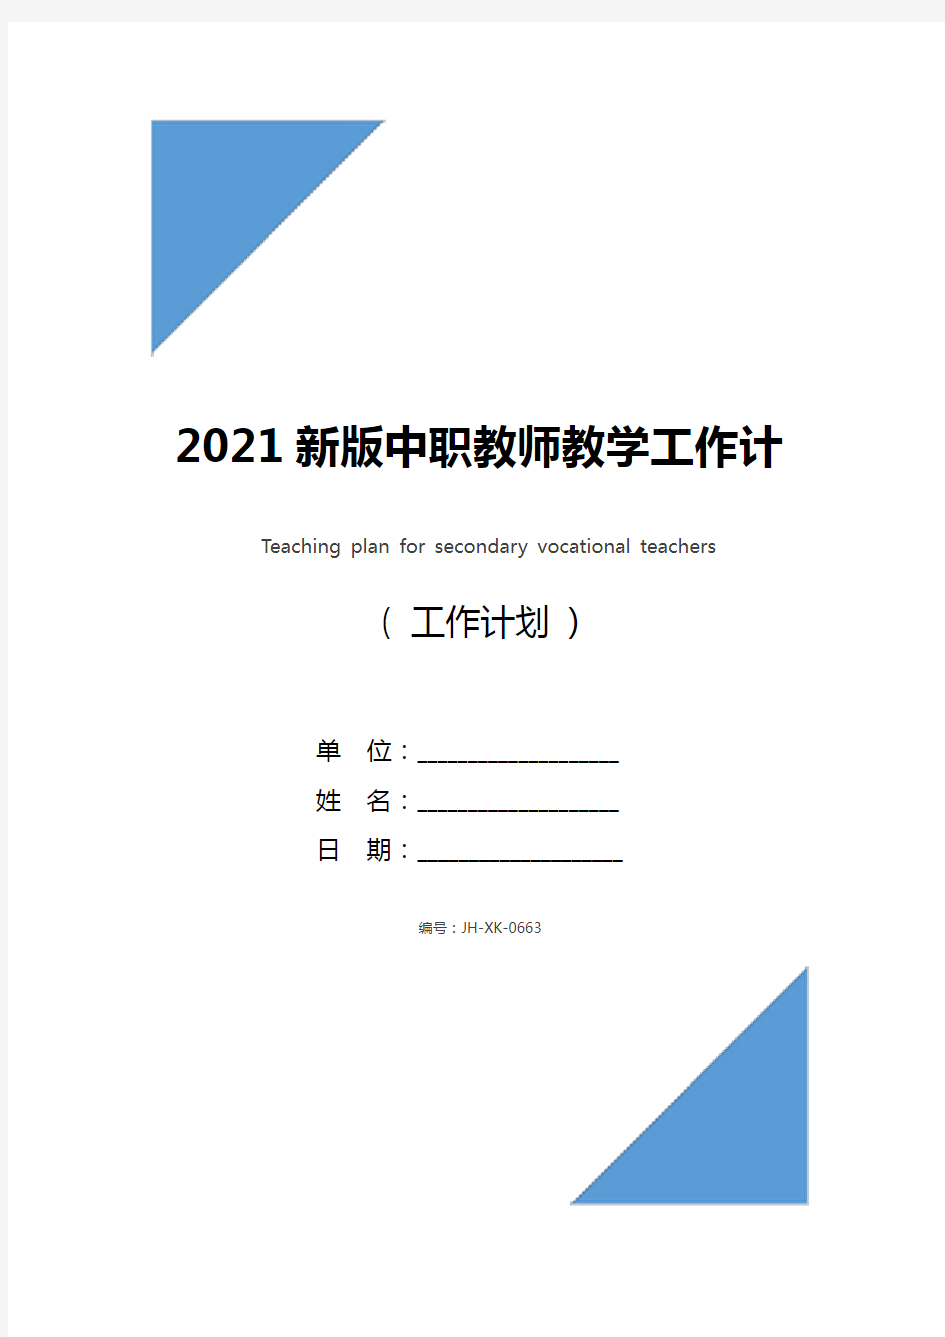 2021新版中职教师教学工作计划